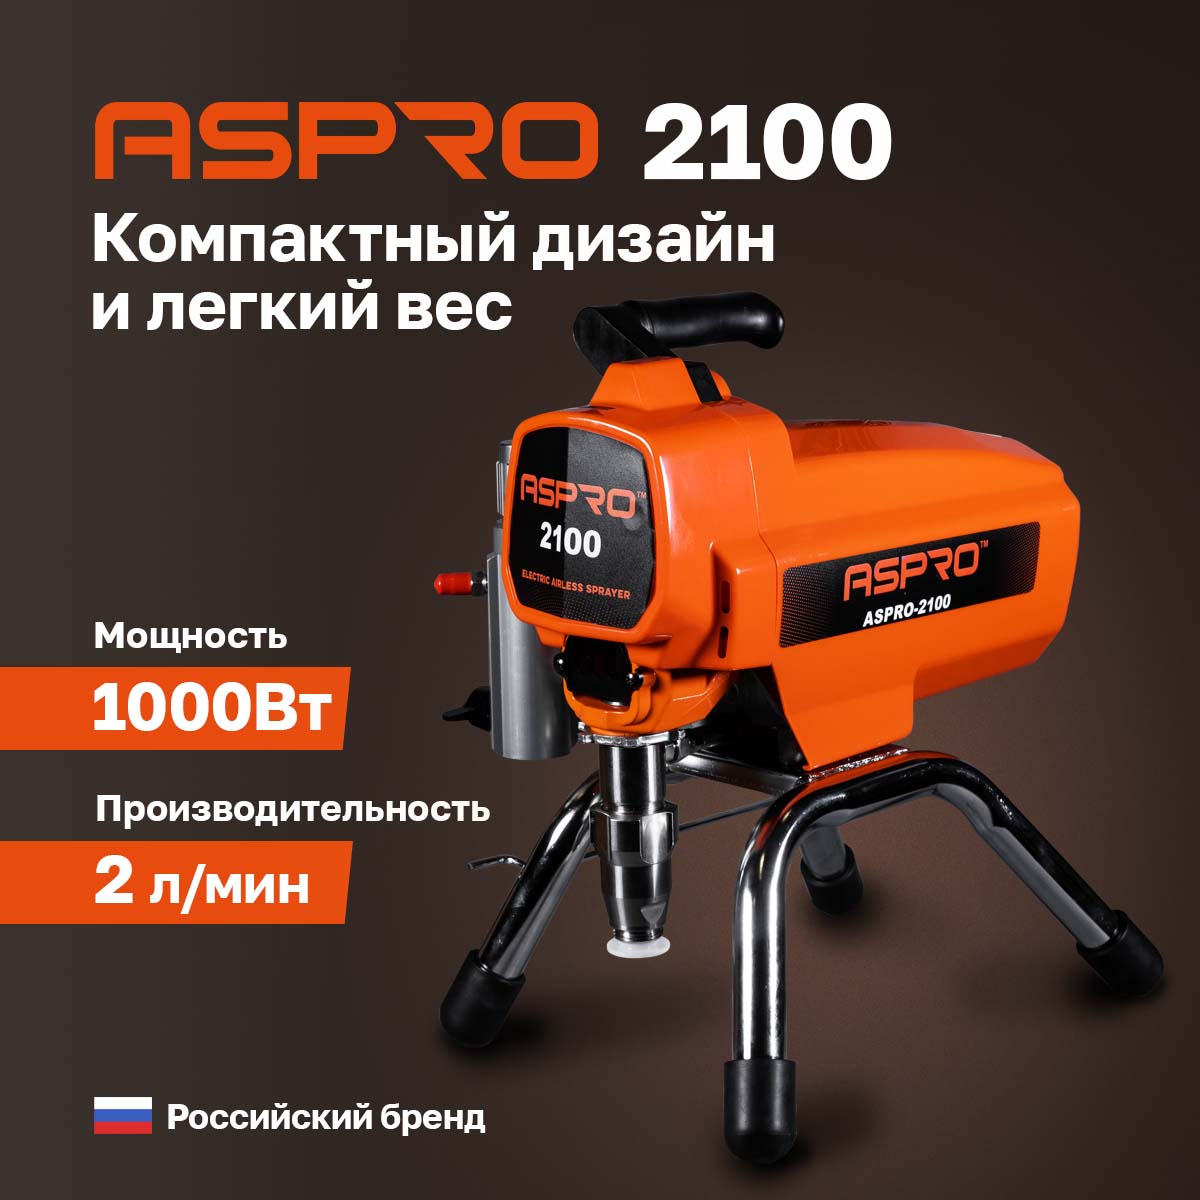 Окрасочный аппарат ASPRO-2100 102383 осушитель воздуха ats dgh 2100 рефрижераторного типа высокого давления